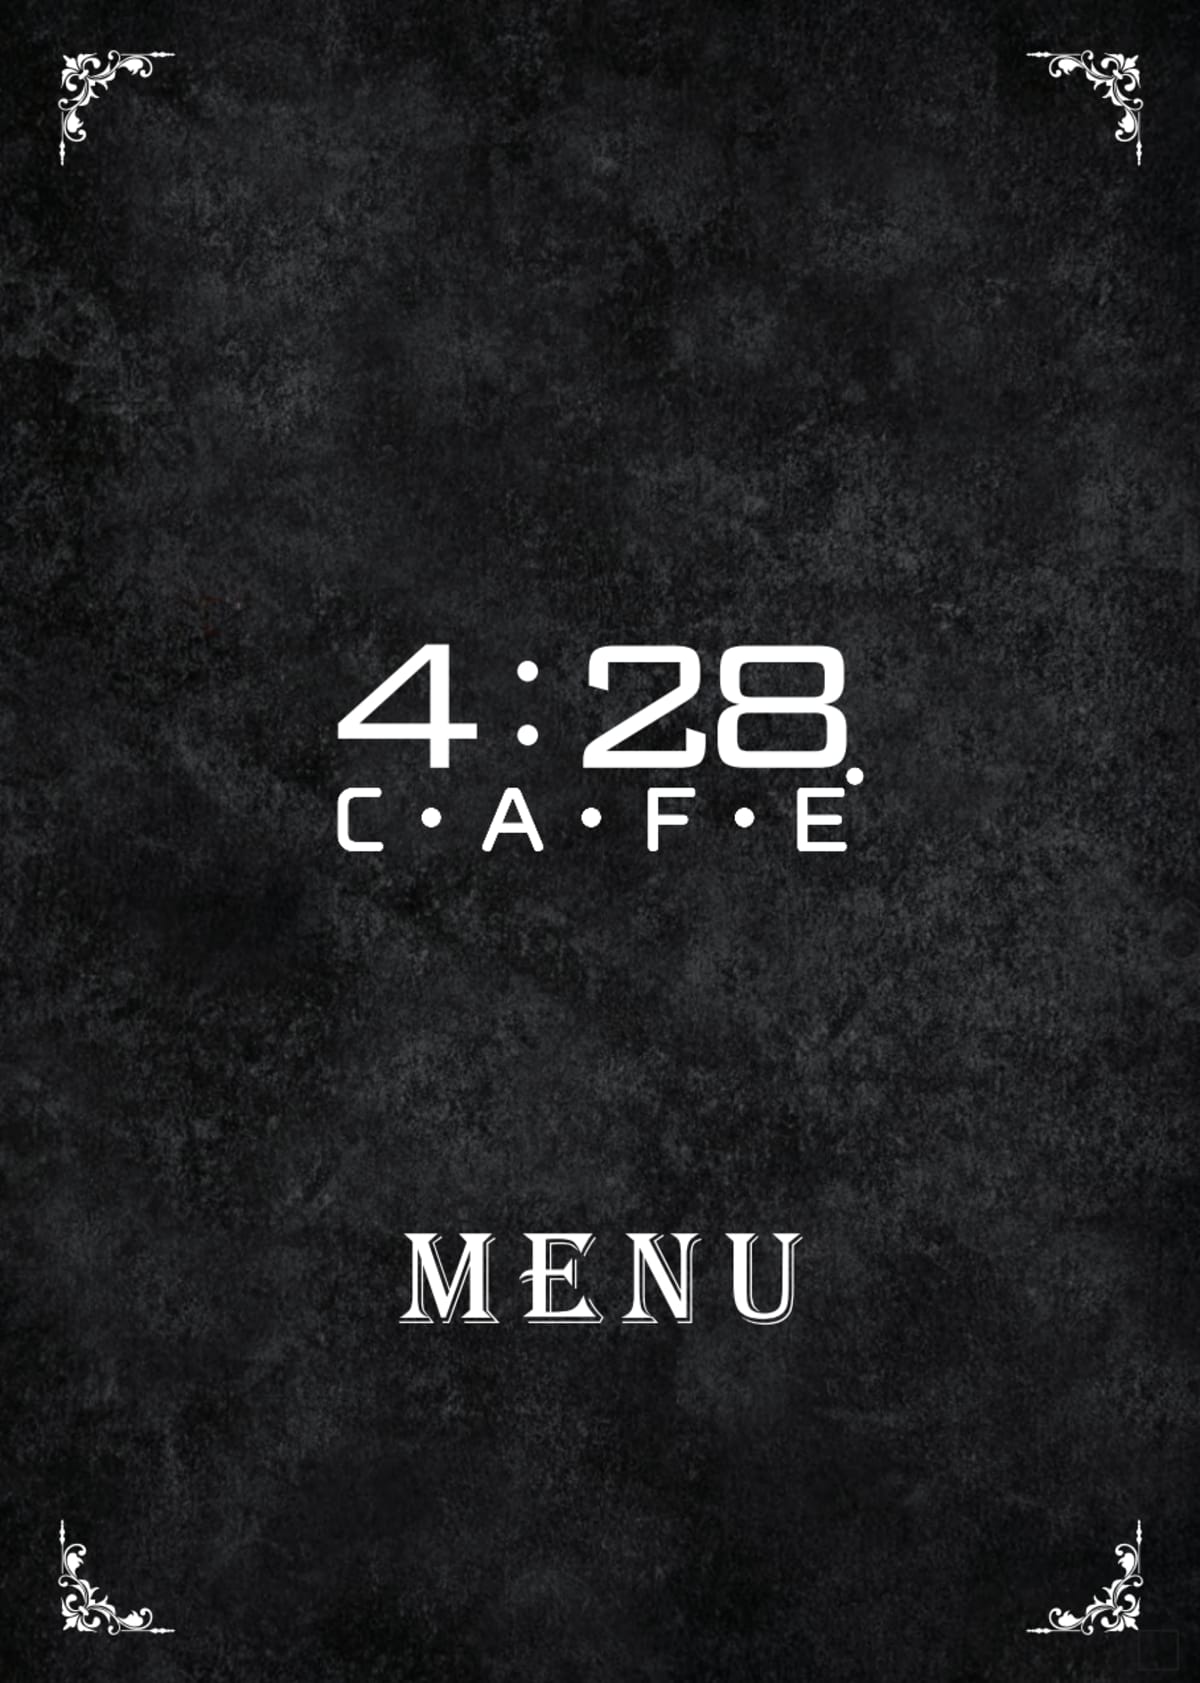 4:28 CAFE' menu